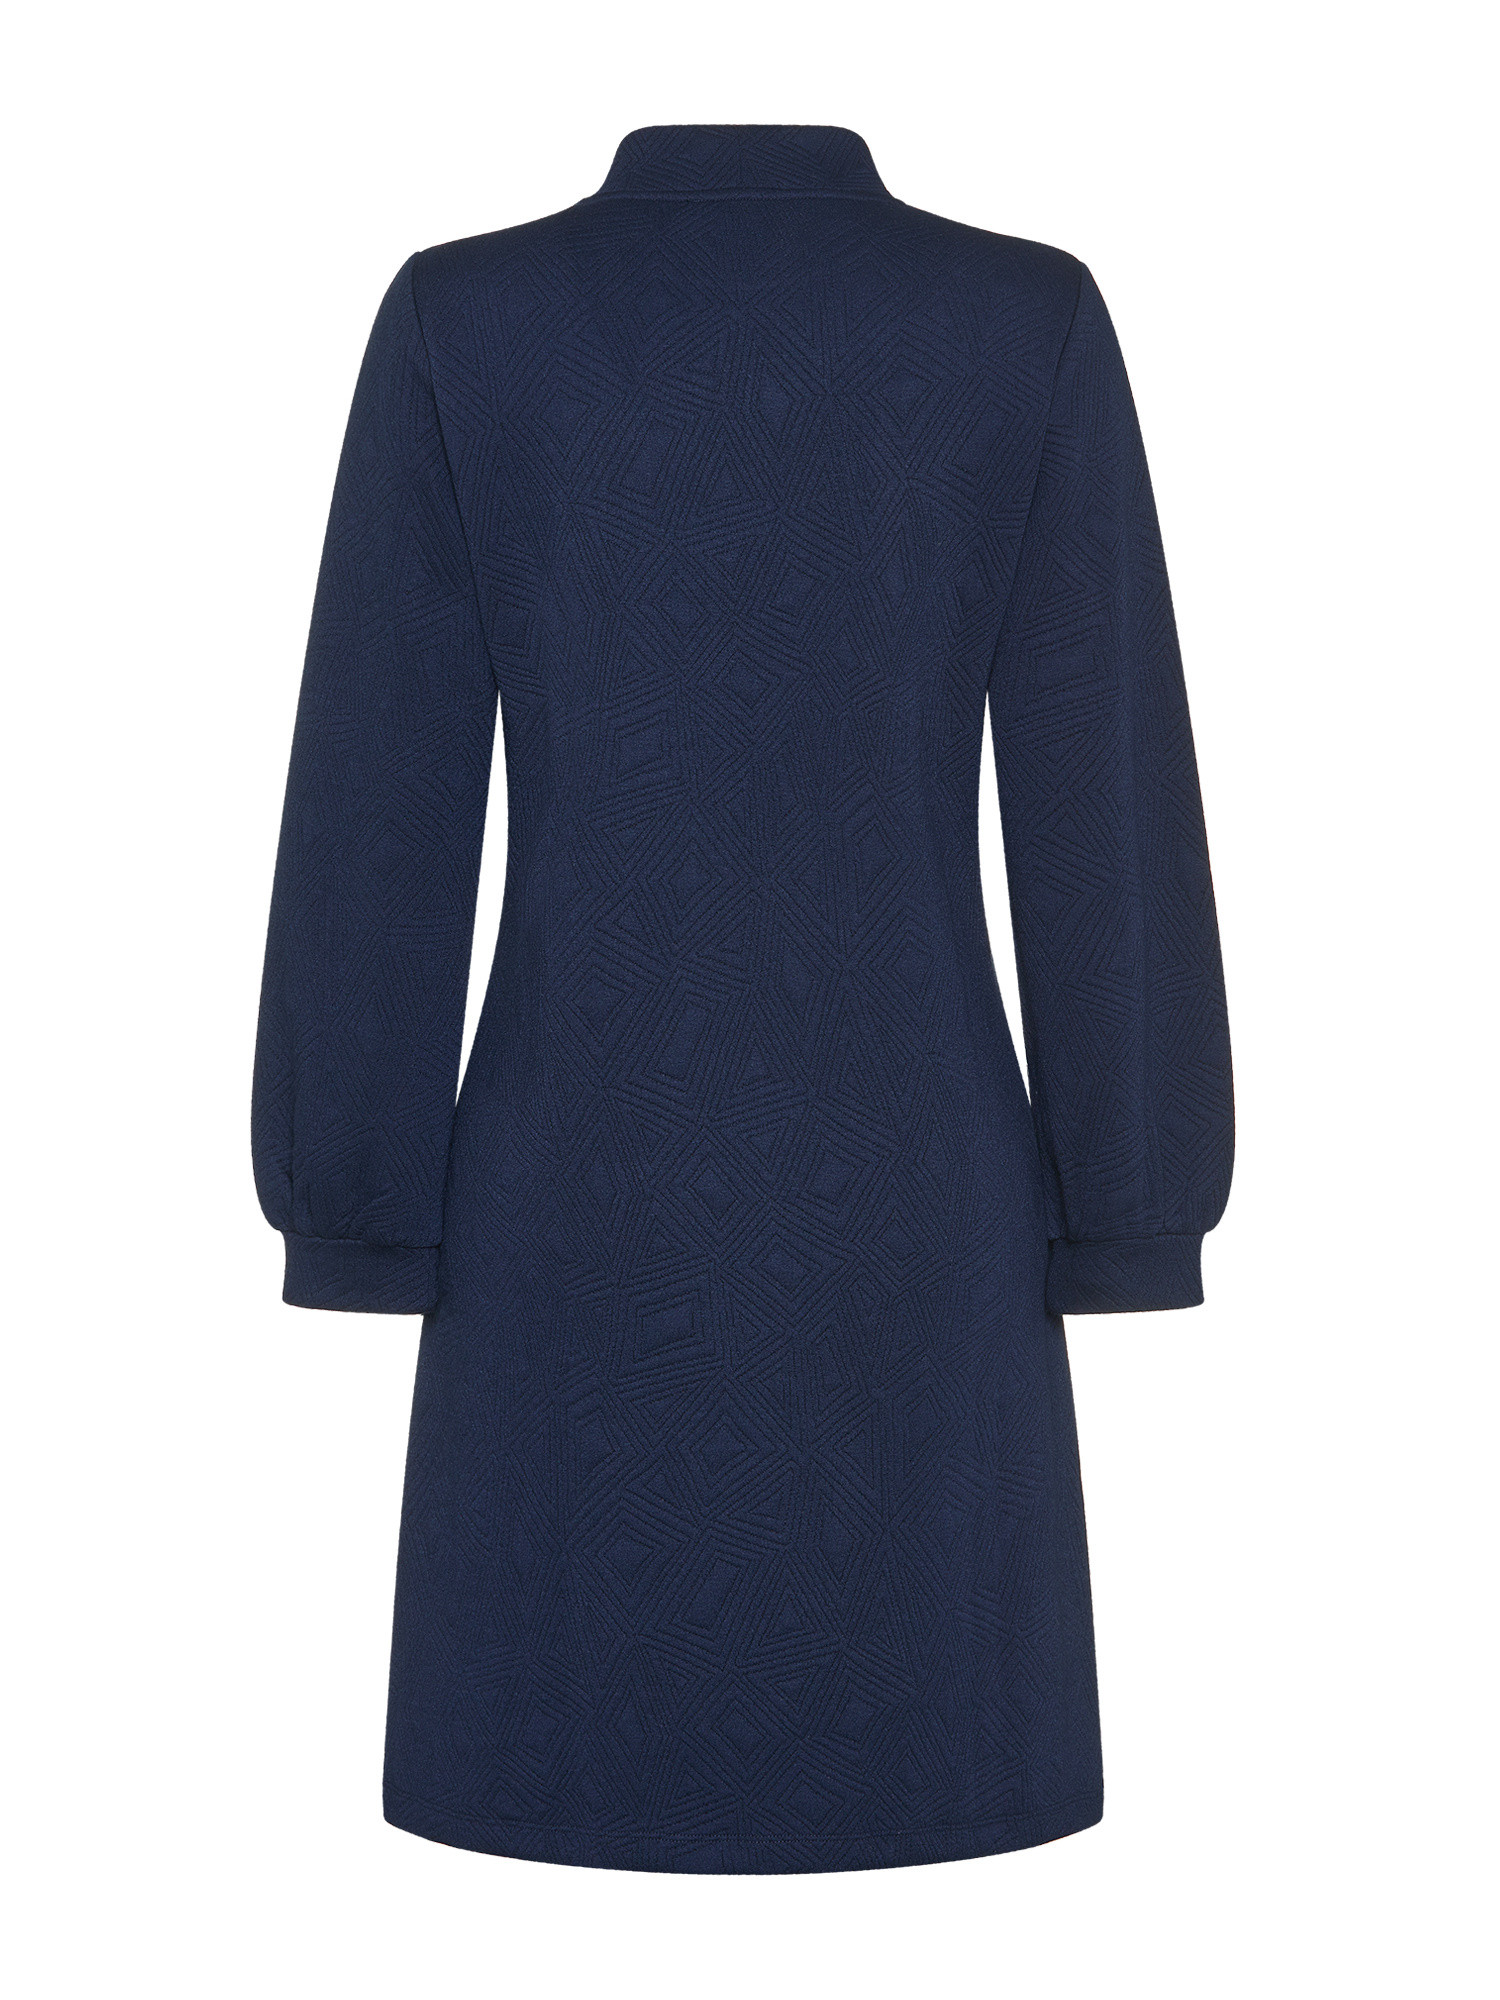 Koan - Flared dress, Blue, large image number 1